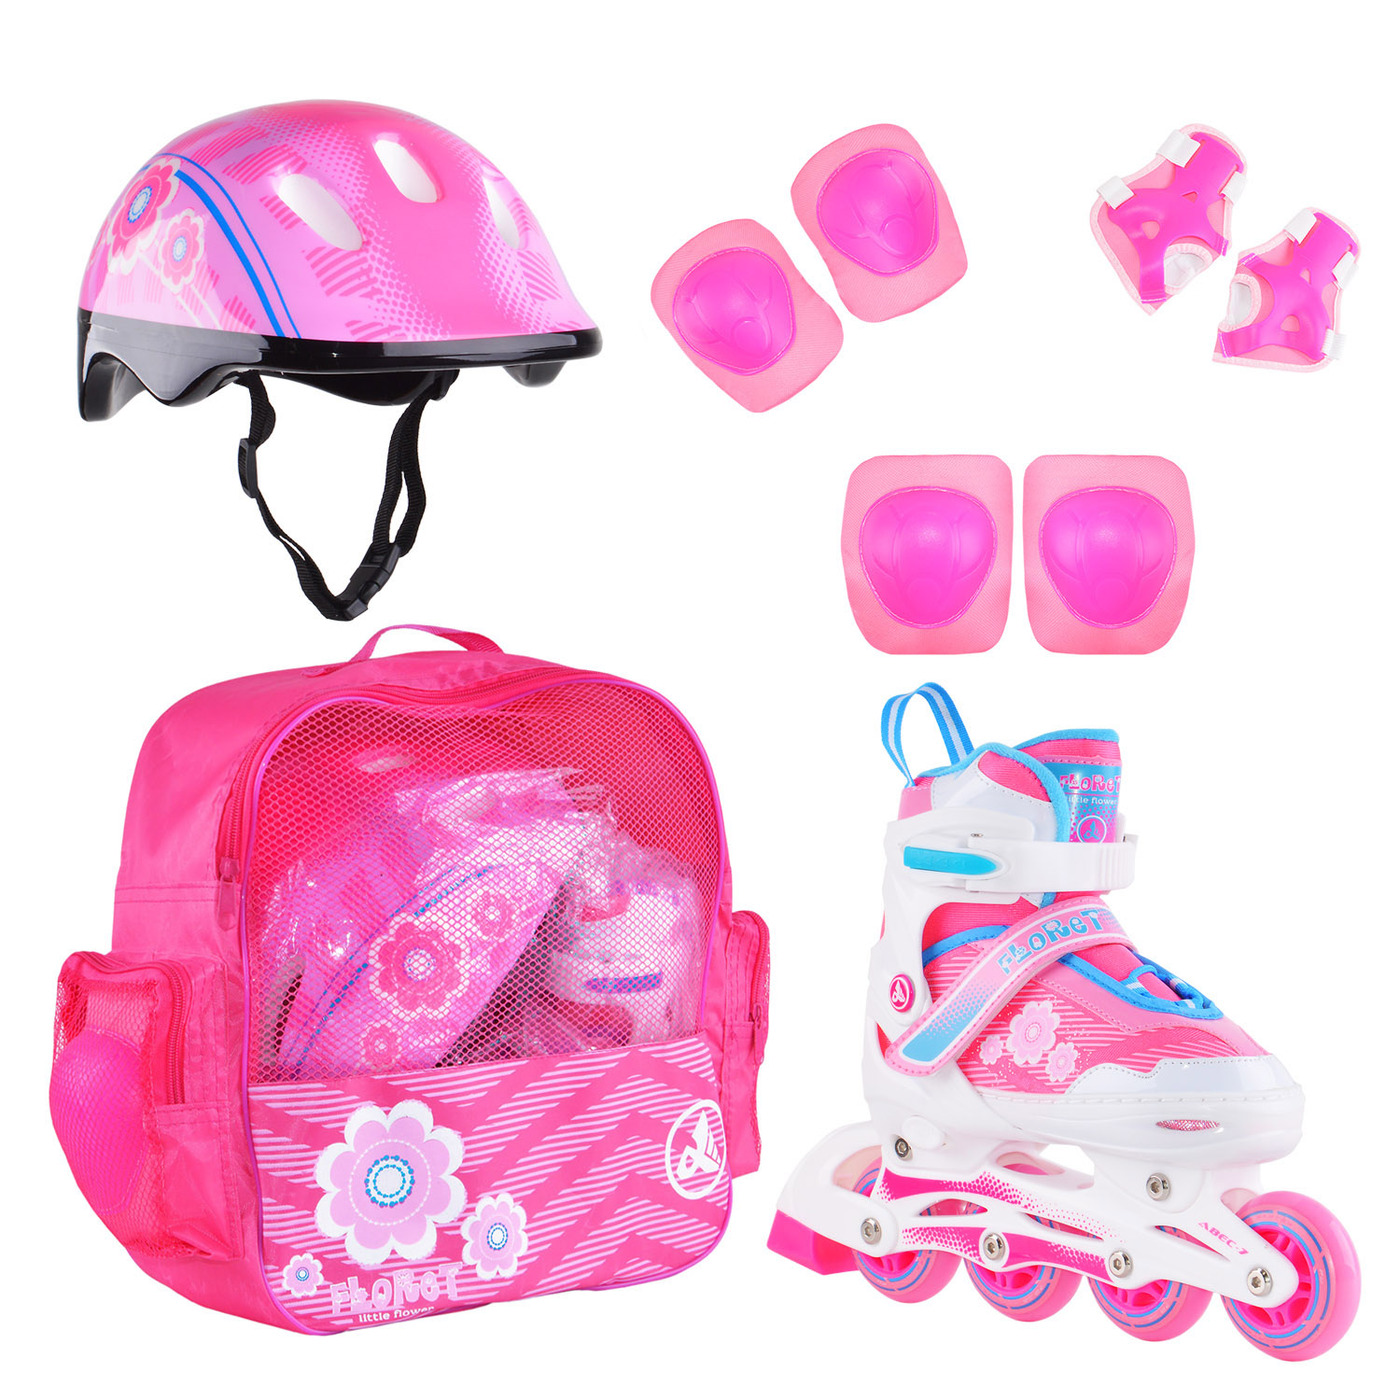 Раздвижные роликовые коньки Alpha Caprice FLORET Wh/Pink/Bl, шлем, защита, сумка M: 35-38 раздвижные роликовые коньки alpha caprice x team pink m